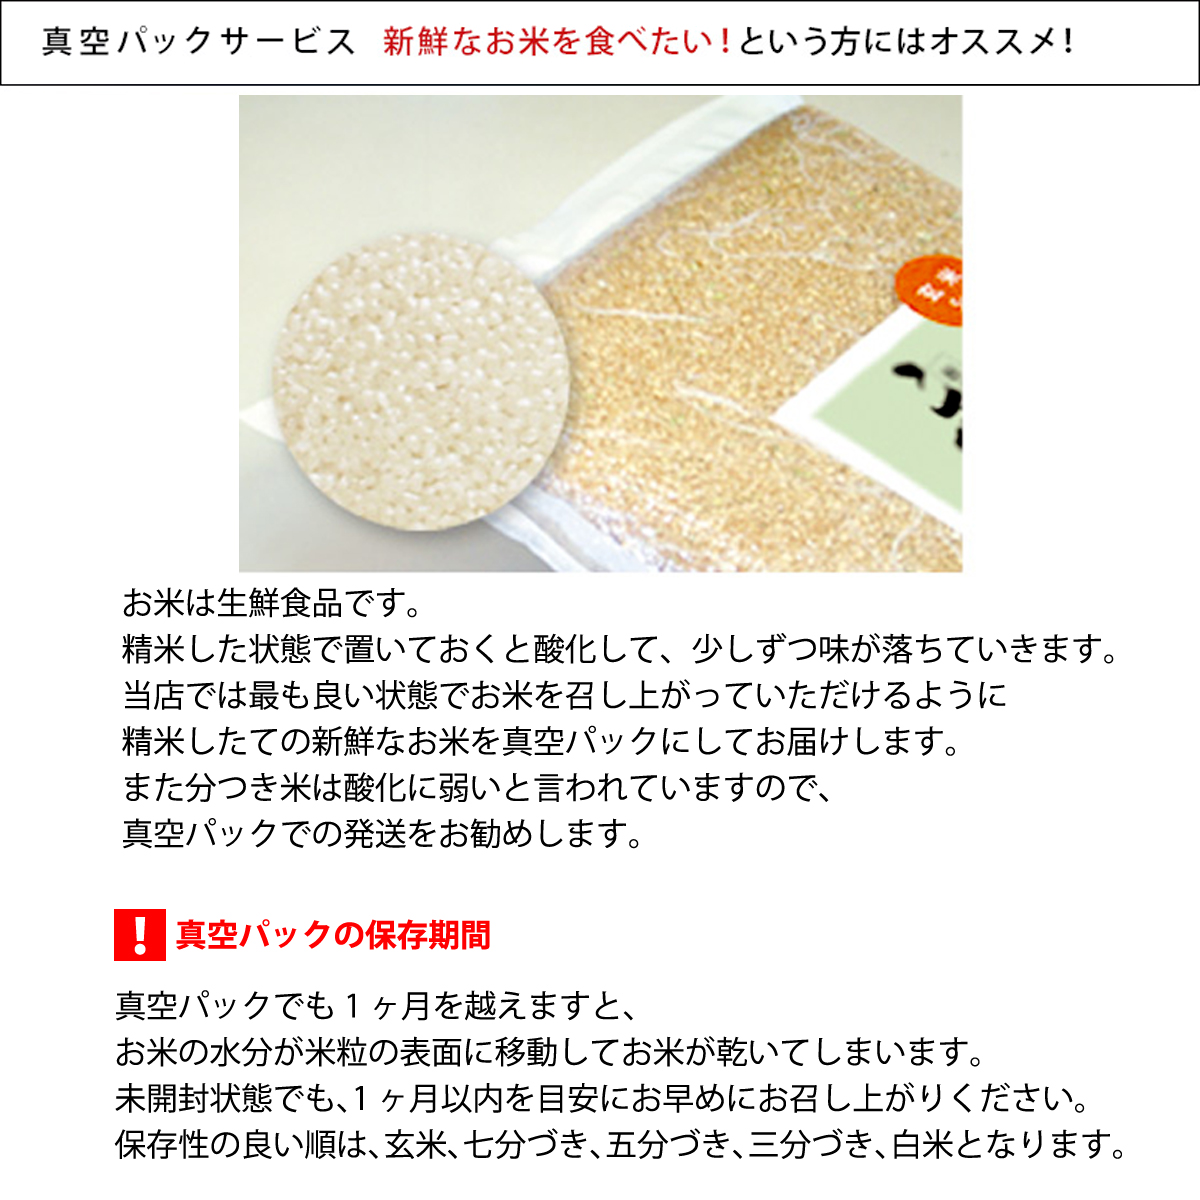 こしひかり 玄米時重量 5kg×2袋×6回 6ヶ月連続 定期便 玄米時重量60kg 分づき米 対応可 真空パック コシヒカリ 米 簡易梱包 エコ梱包